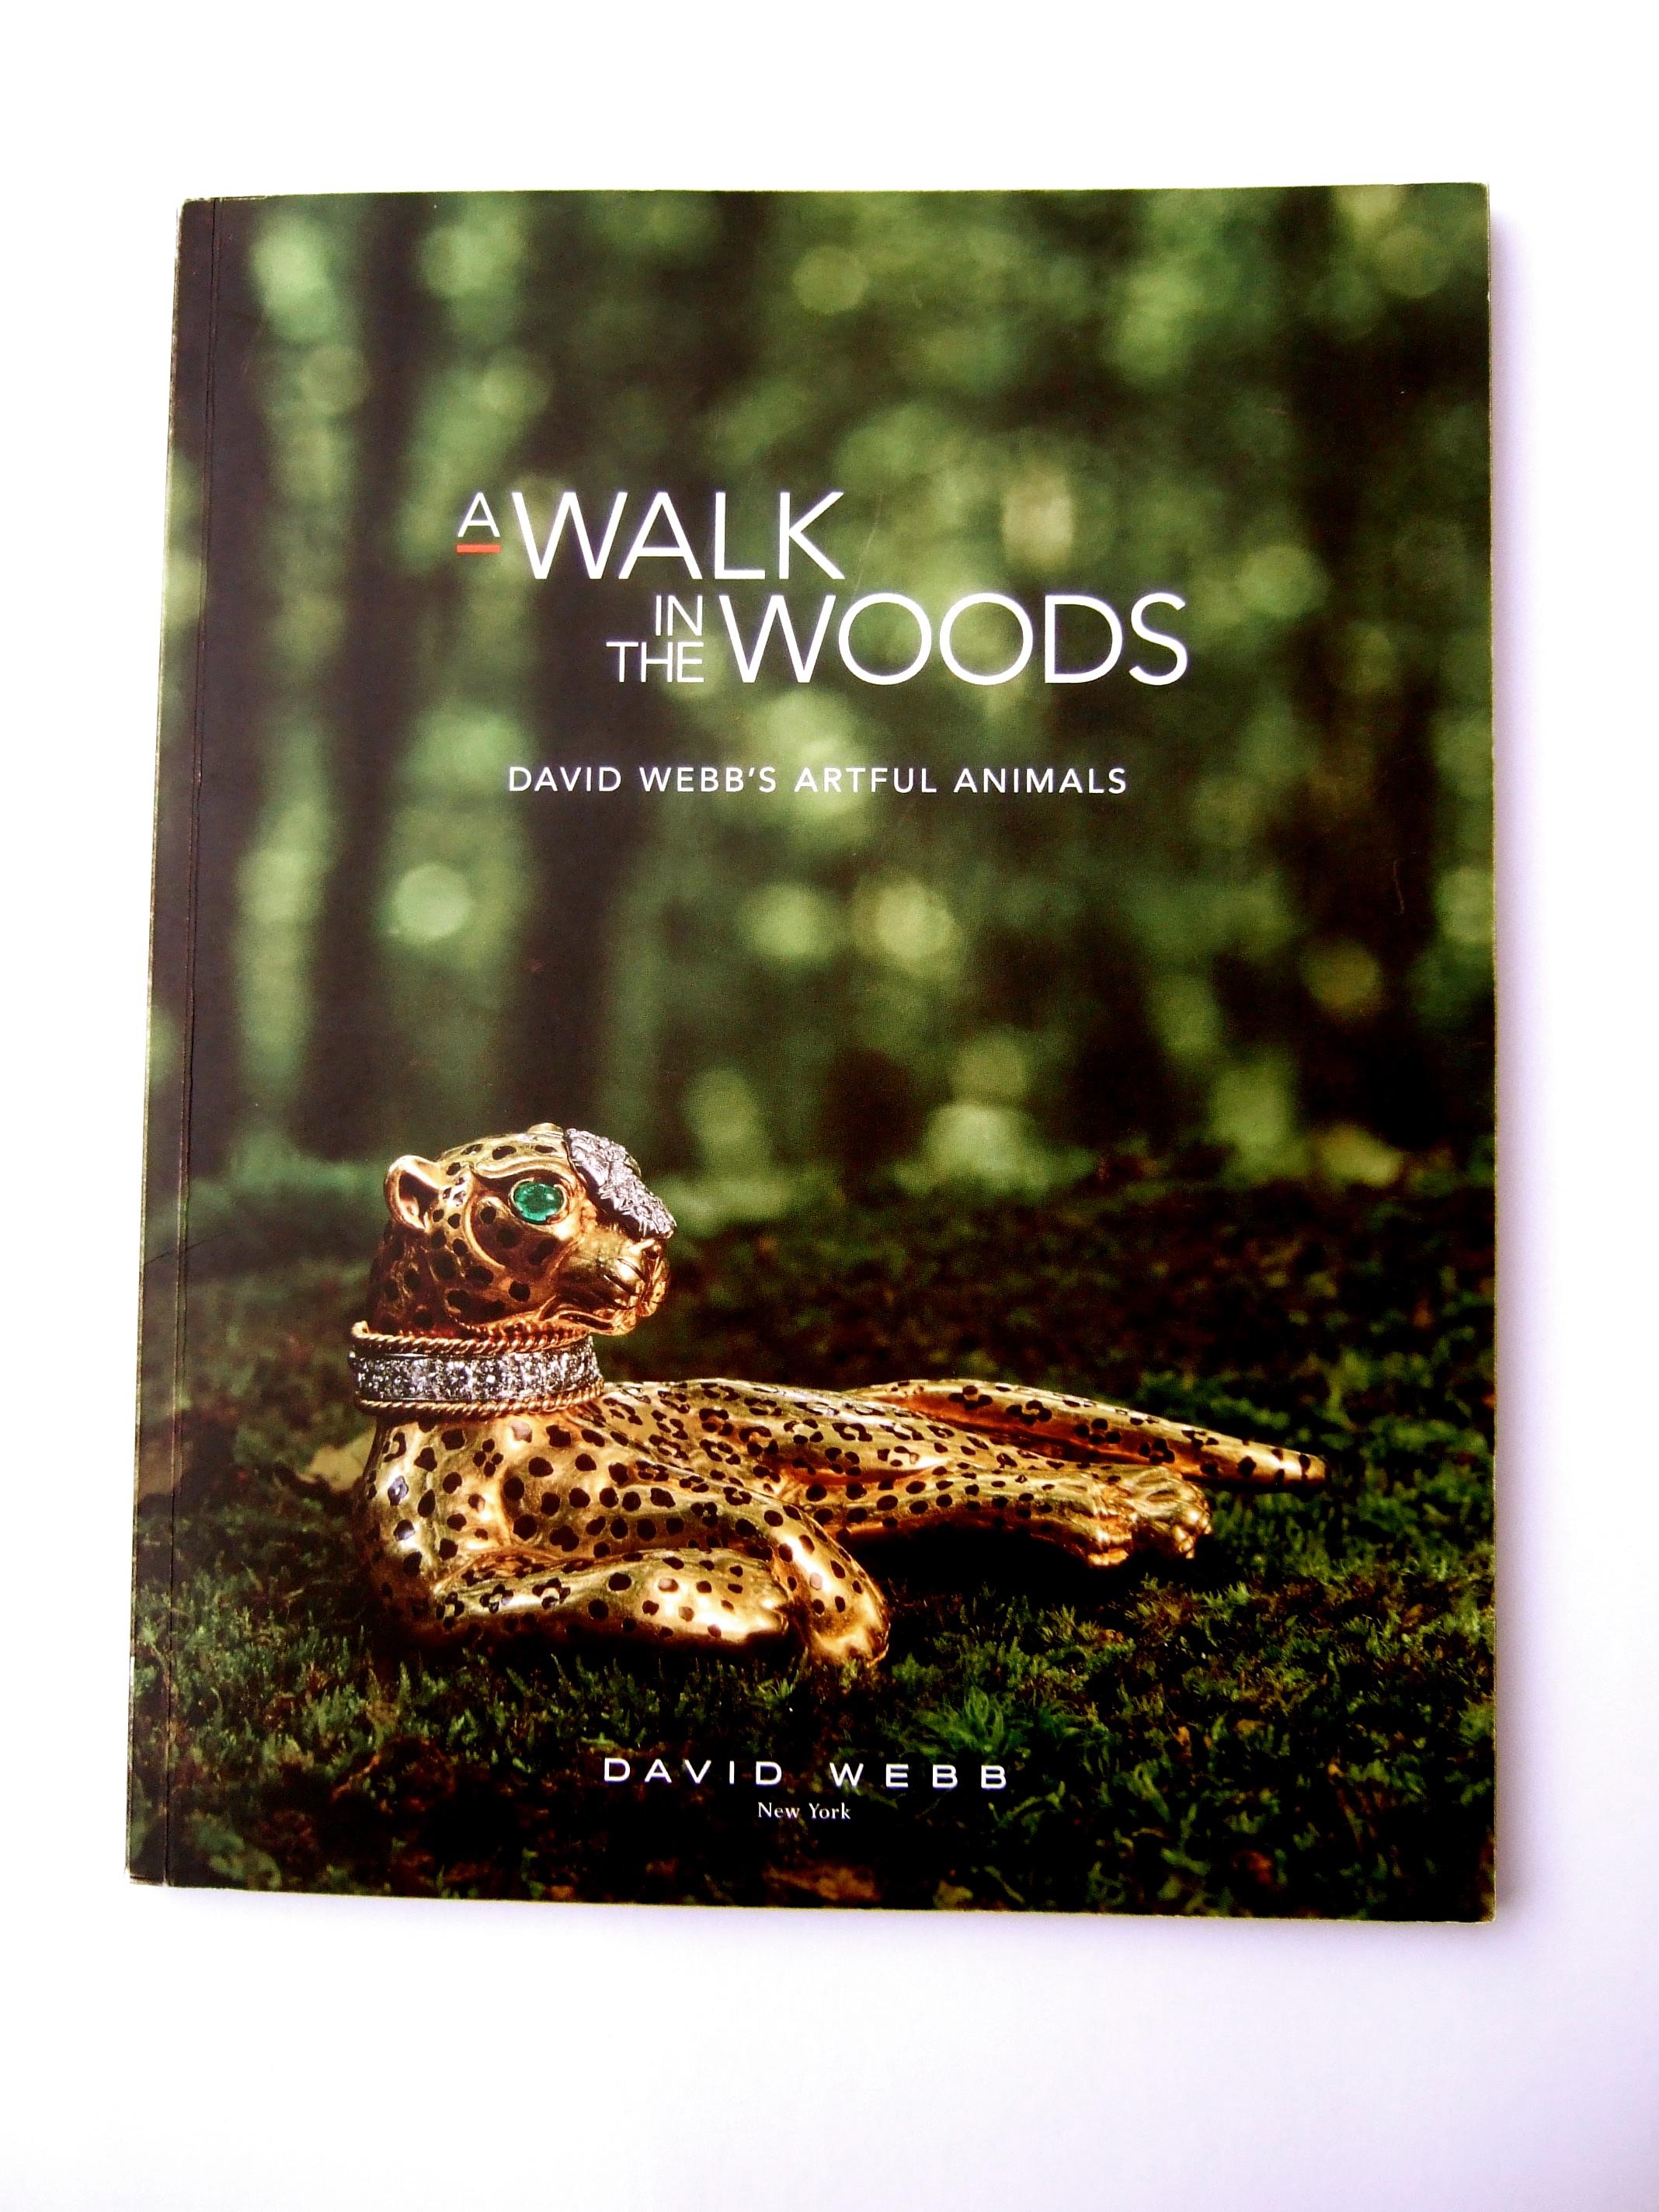 David Webb's A Walk in the Woods Artful Animals Soft Cover Pamphlet  Ausstellung Buch c 2022
Das Softcover-Broschürenbuch war von einem 2022  David Webb Ausstellung 
mit einem Archiv von Webbs außergewöhnlichen Tierschmuckdesigns

Die